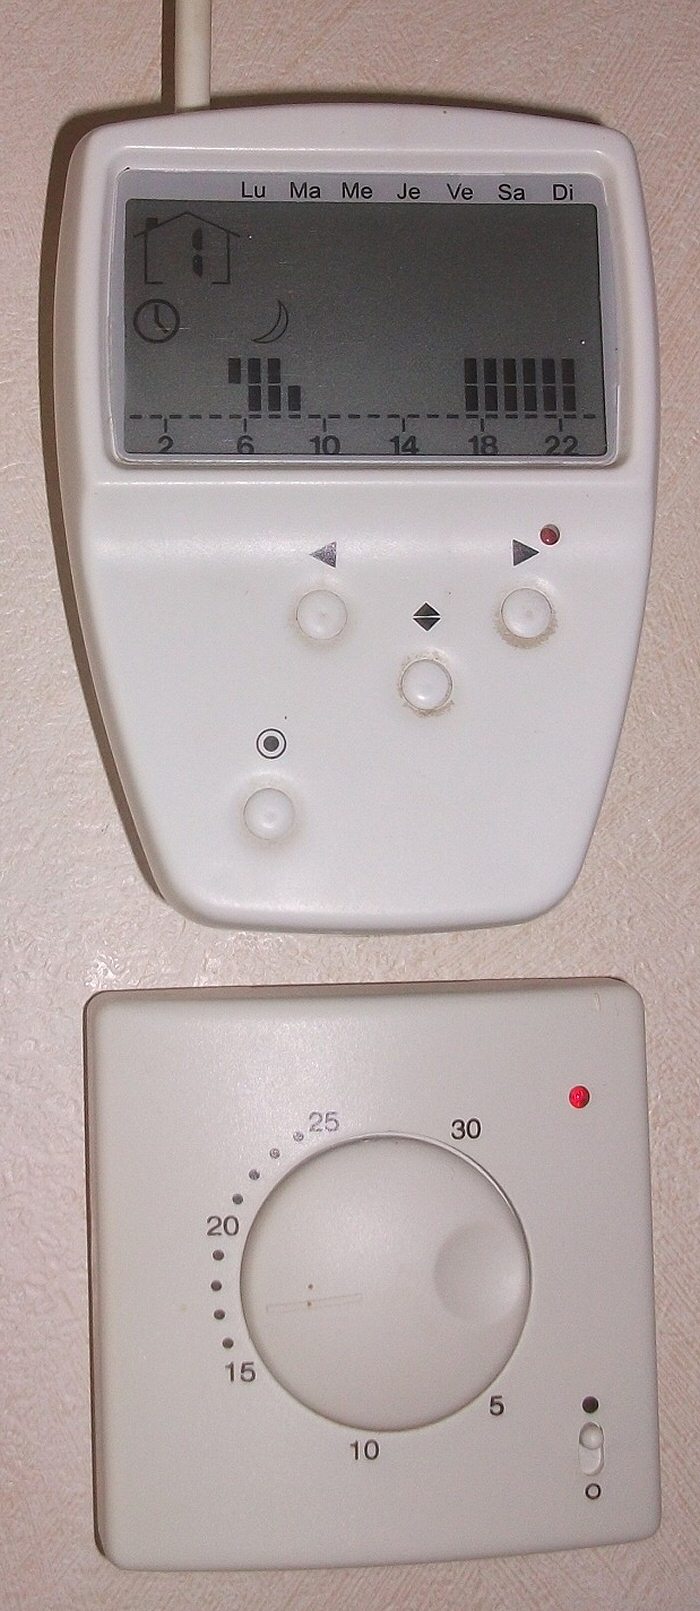 Programmateur Micrel relié à un thermostat d'ambiance NKE caleo